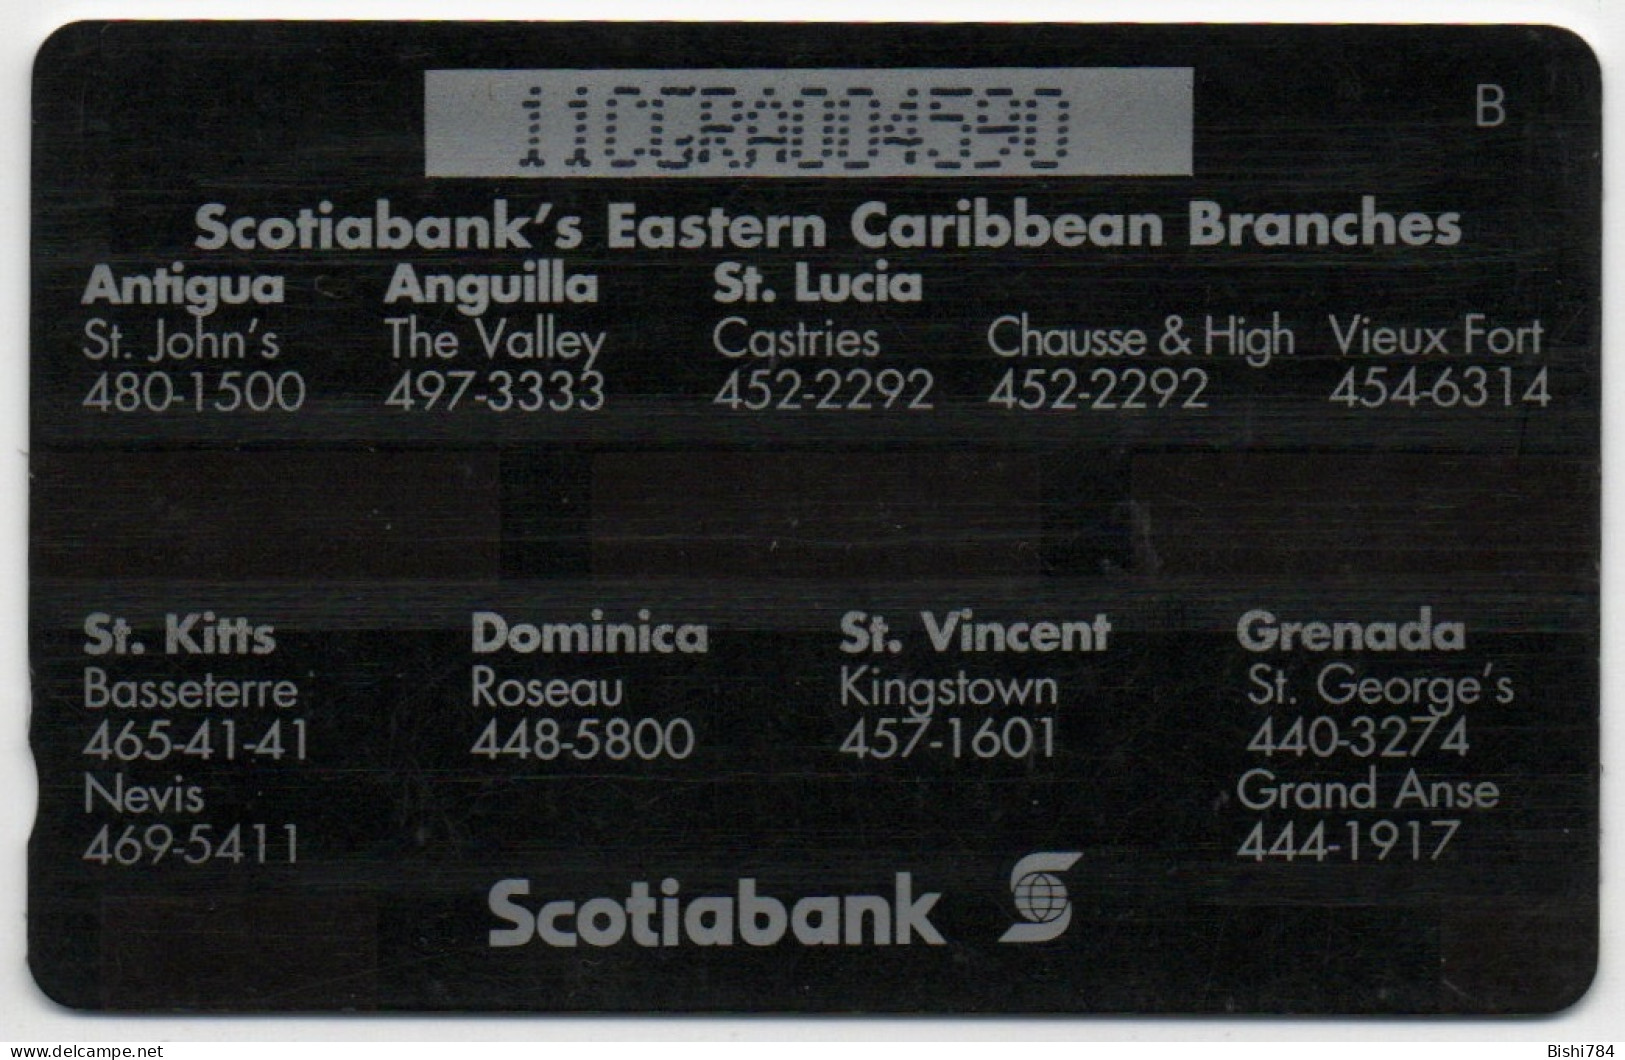 Grenada - Scotiabank - 11CGRA - Grenada